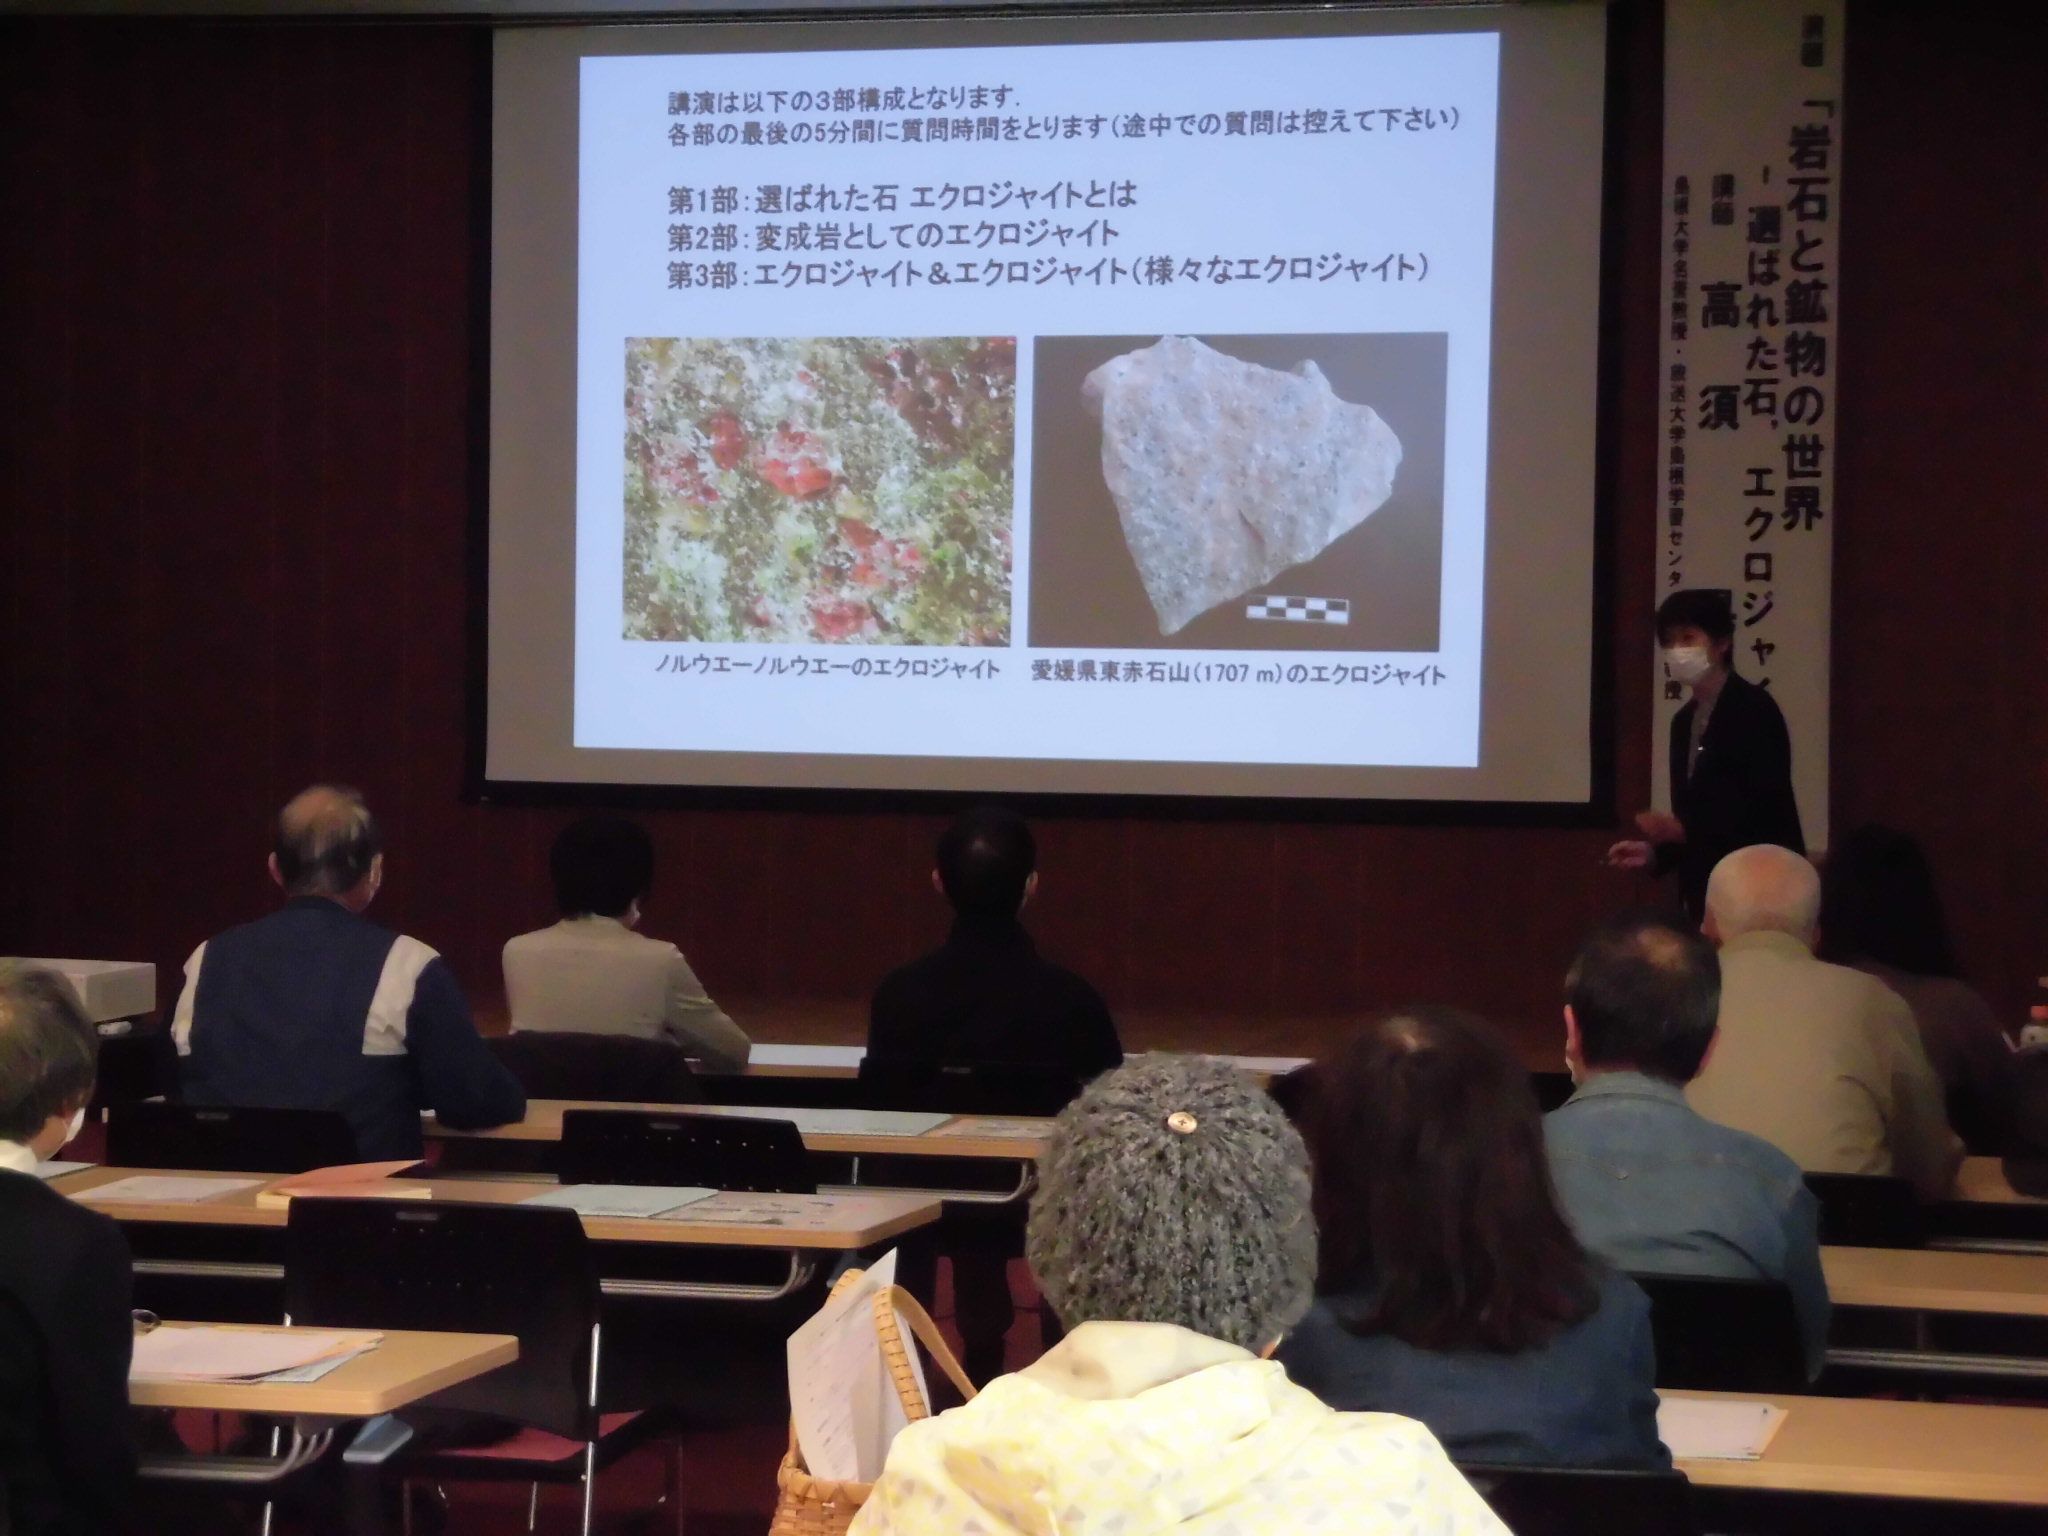 エクロジャイトについて説明する高須先生とそれを聞く受講者の写真